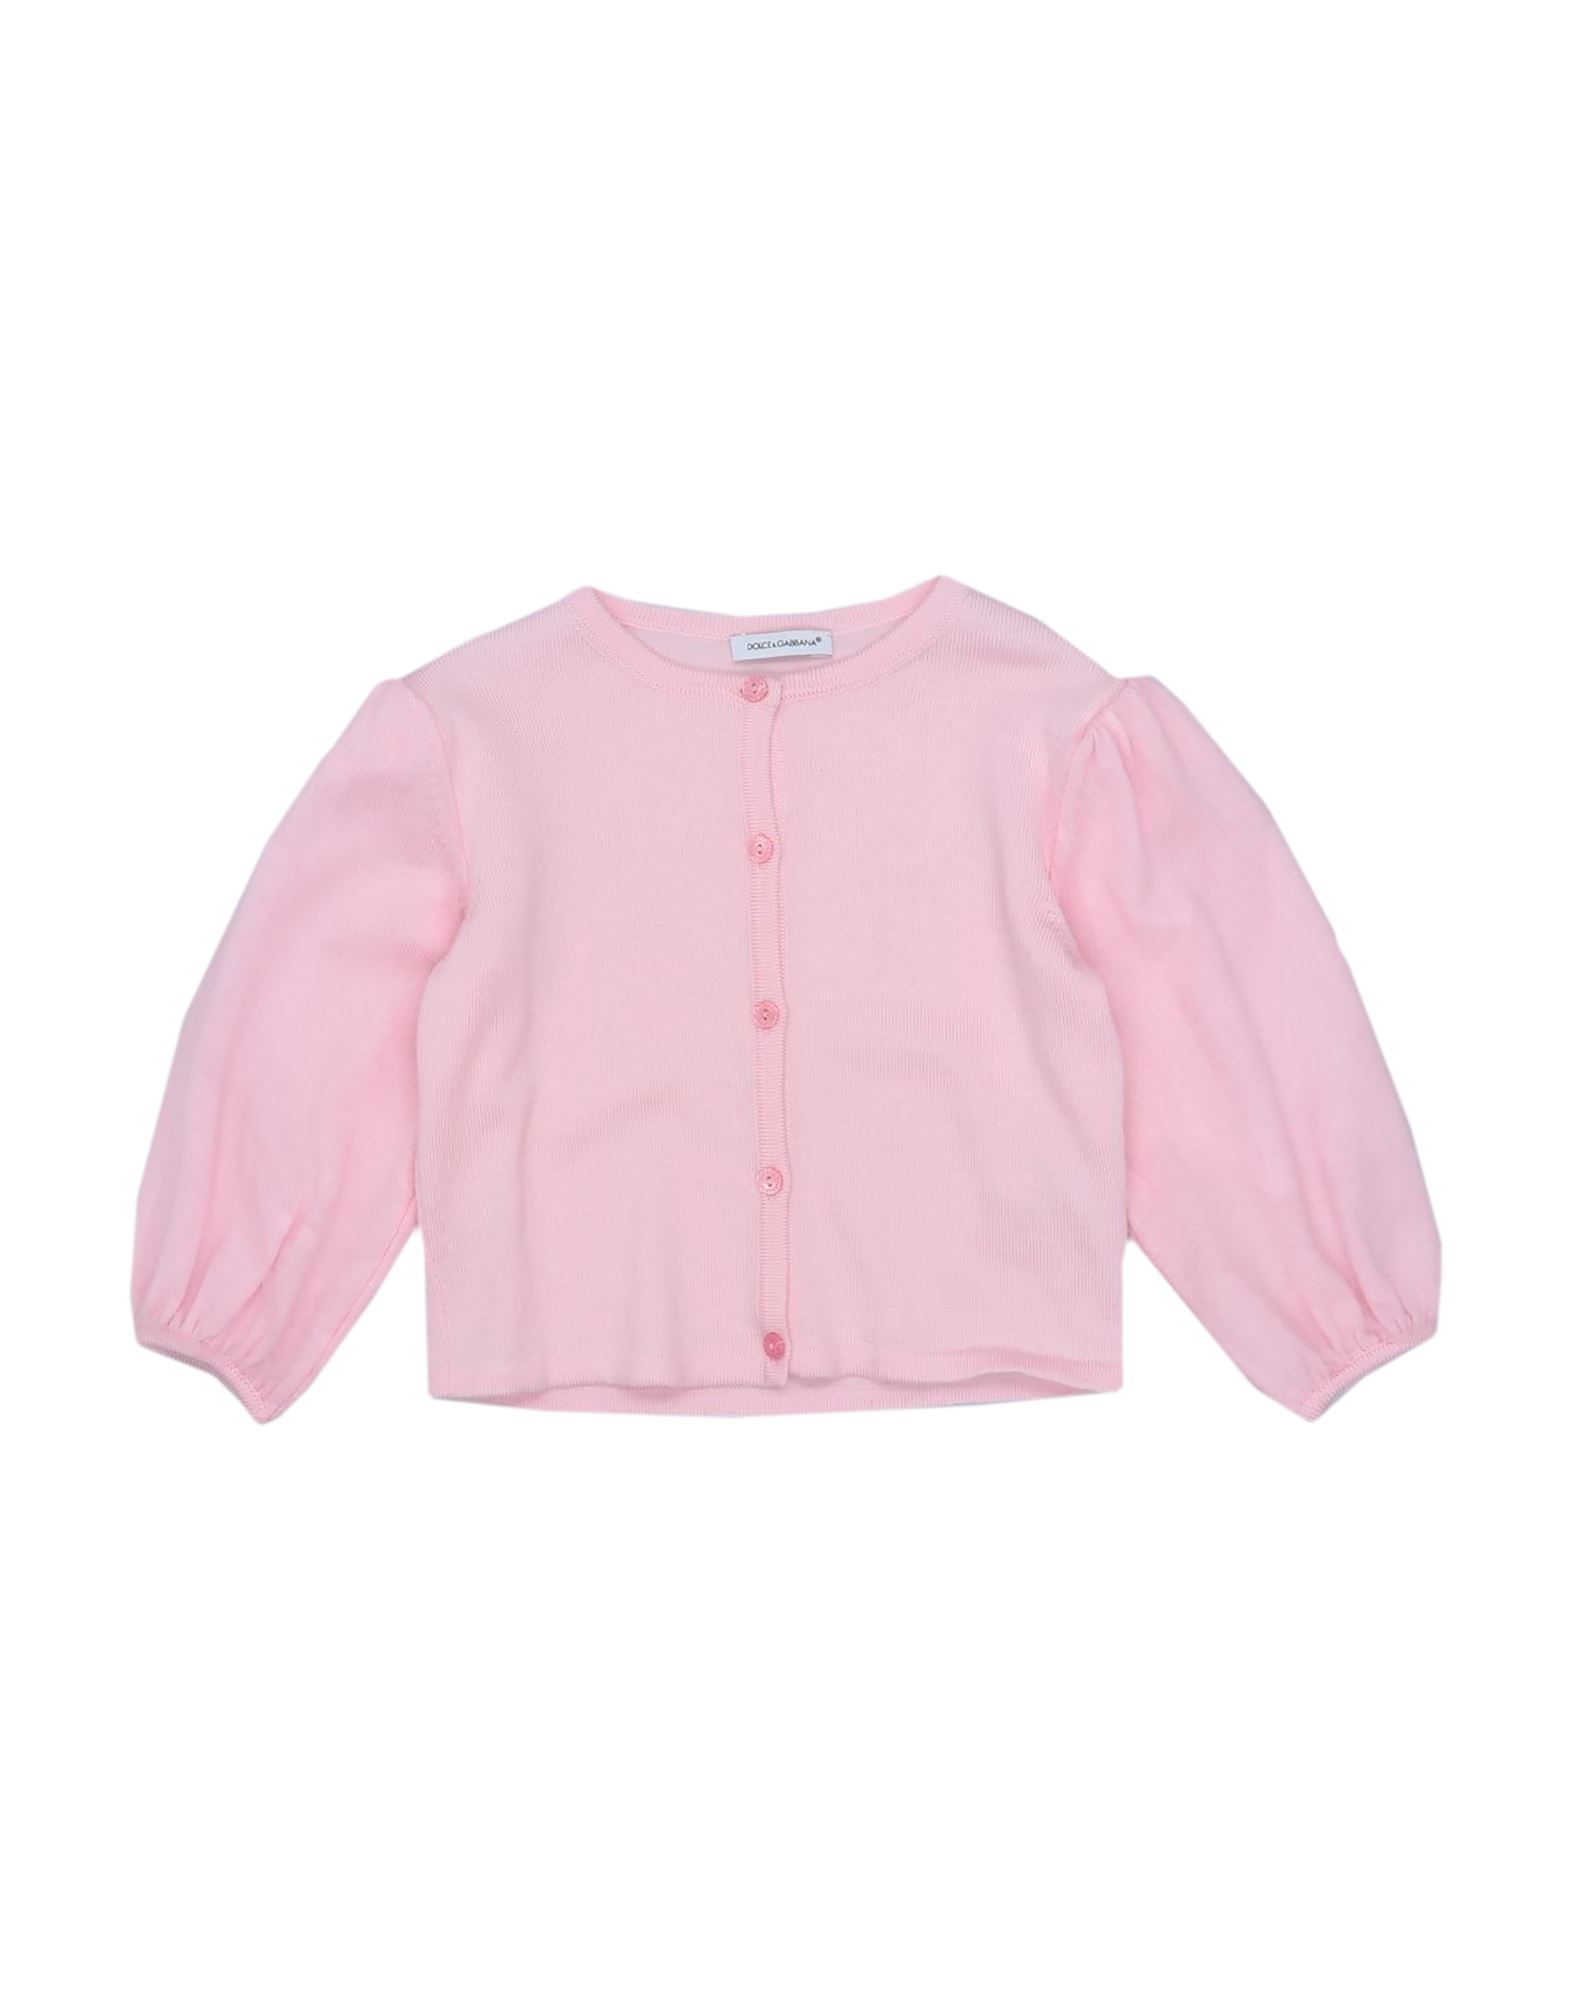 Dolce & Gabbana Kids'  Toddler Girl Cardigan Pink Size 6 Virgin Wool, Polyamide